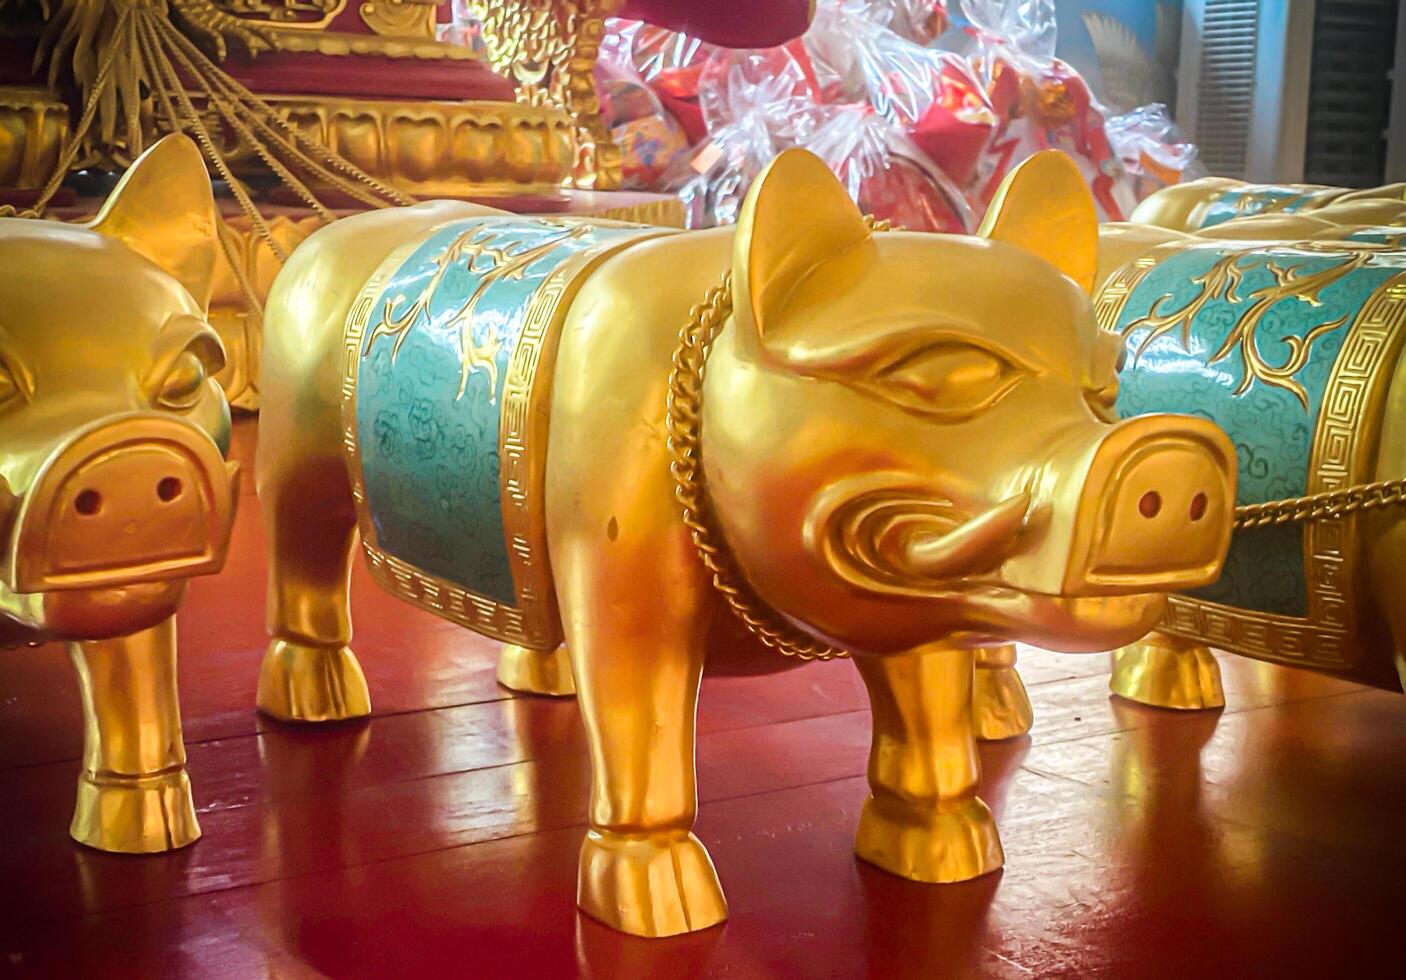 golden Schwein Statue ist ein schön thailändisch und Chinesisch die Architektur von Nachas sa thailändisch Rutsche Schrein, Naja Schrein, Najasaataichue, Nezha Schrein Chinesisch Tempel. gut Glück Chinesisch Neu Jahr Feierlichkeiten. foto